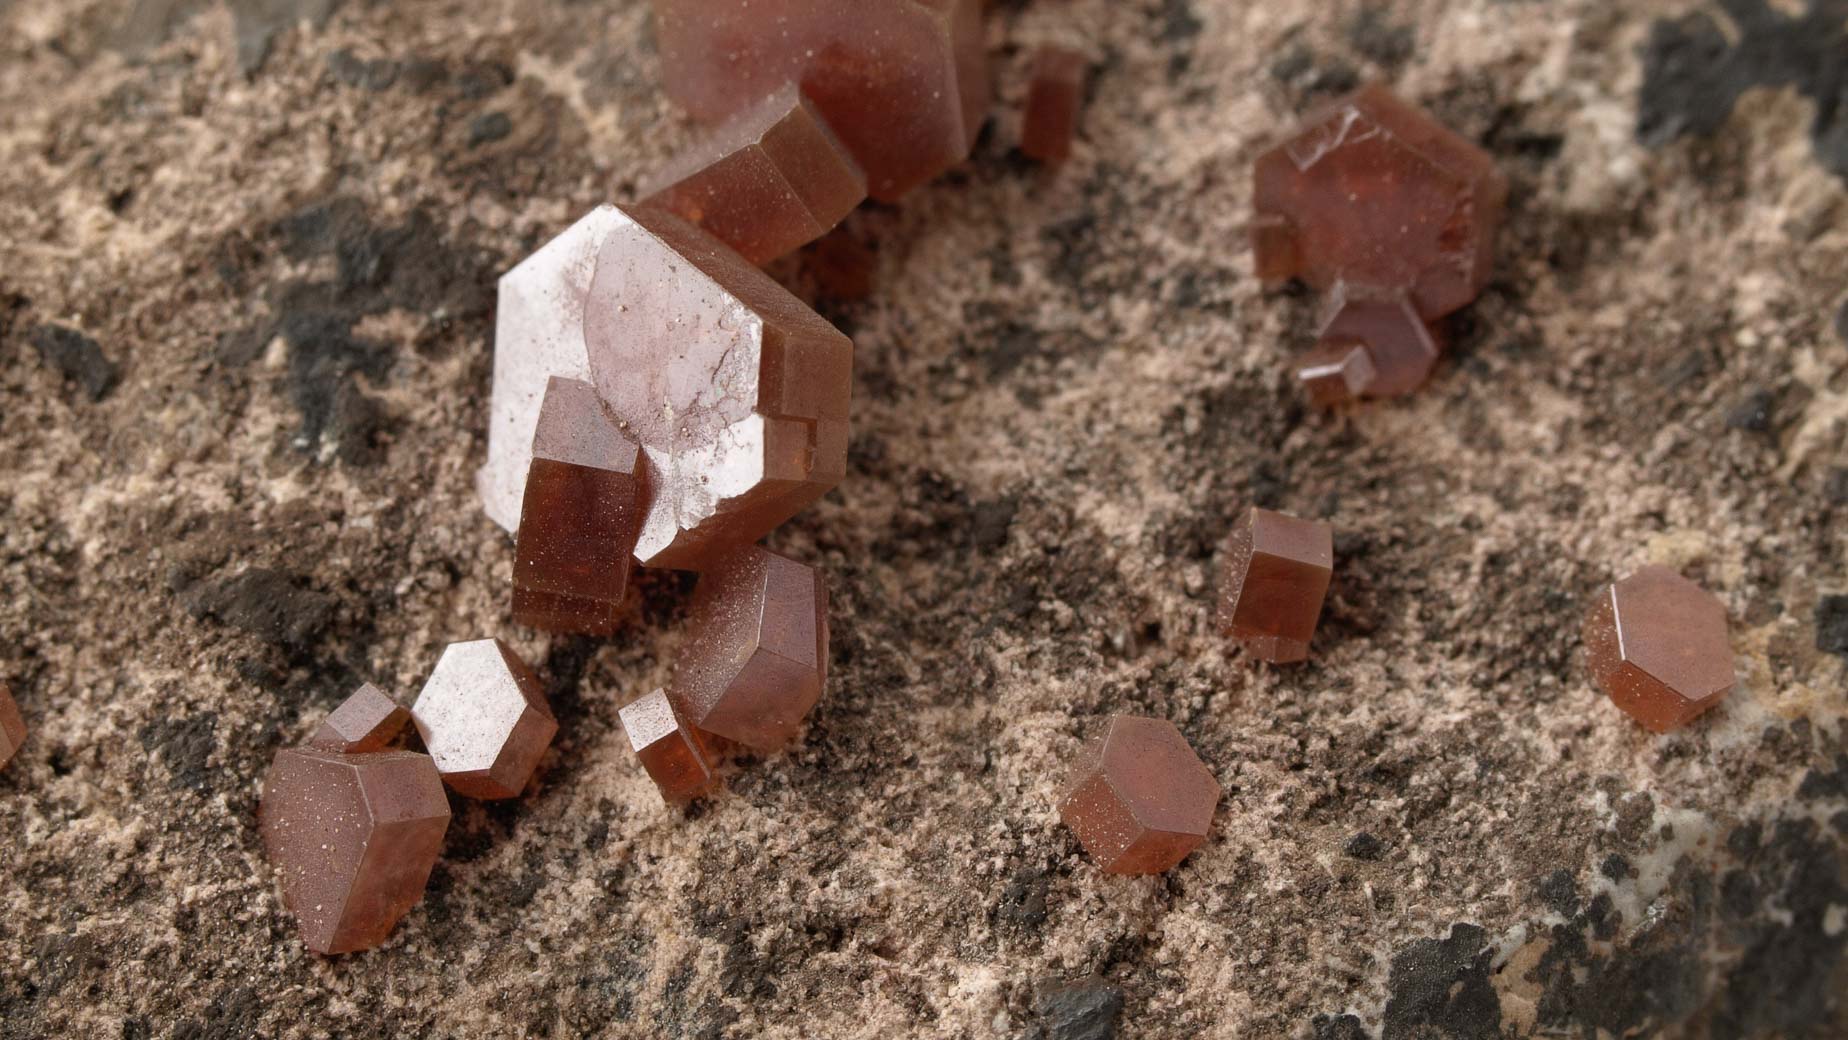 Kristali vanadinita - najveći kristal je veličine 3x4 mm